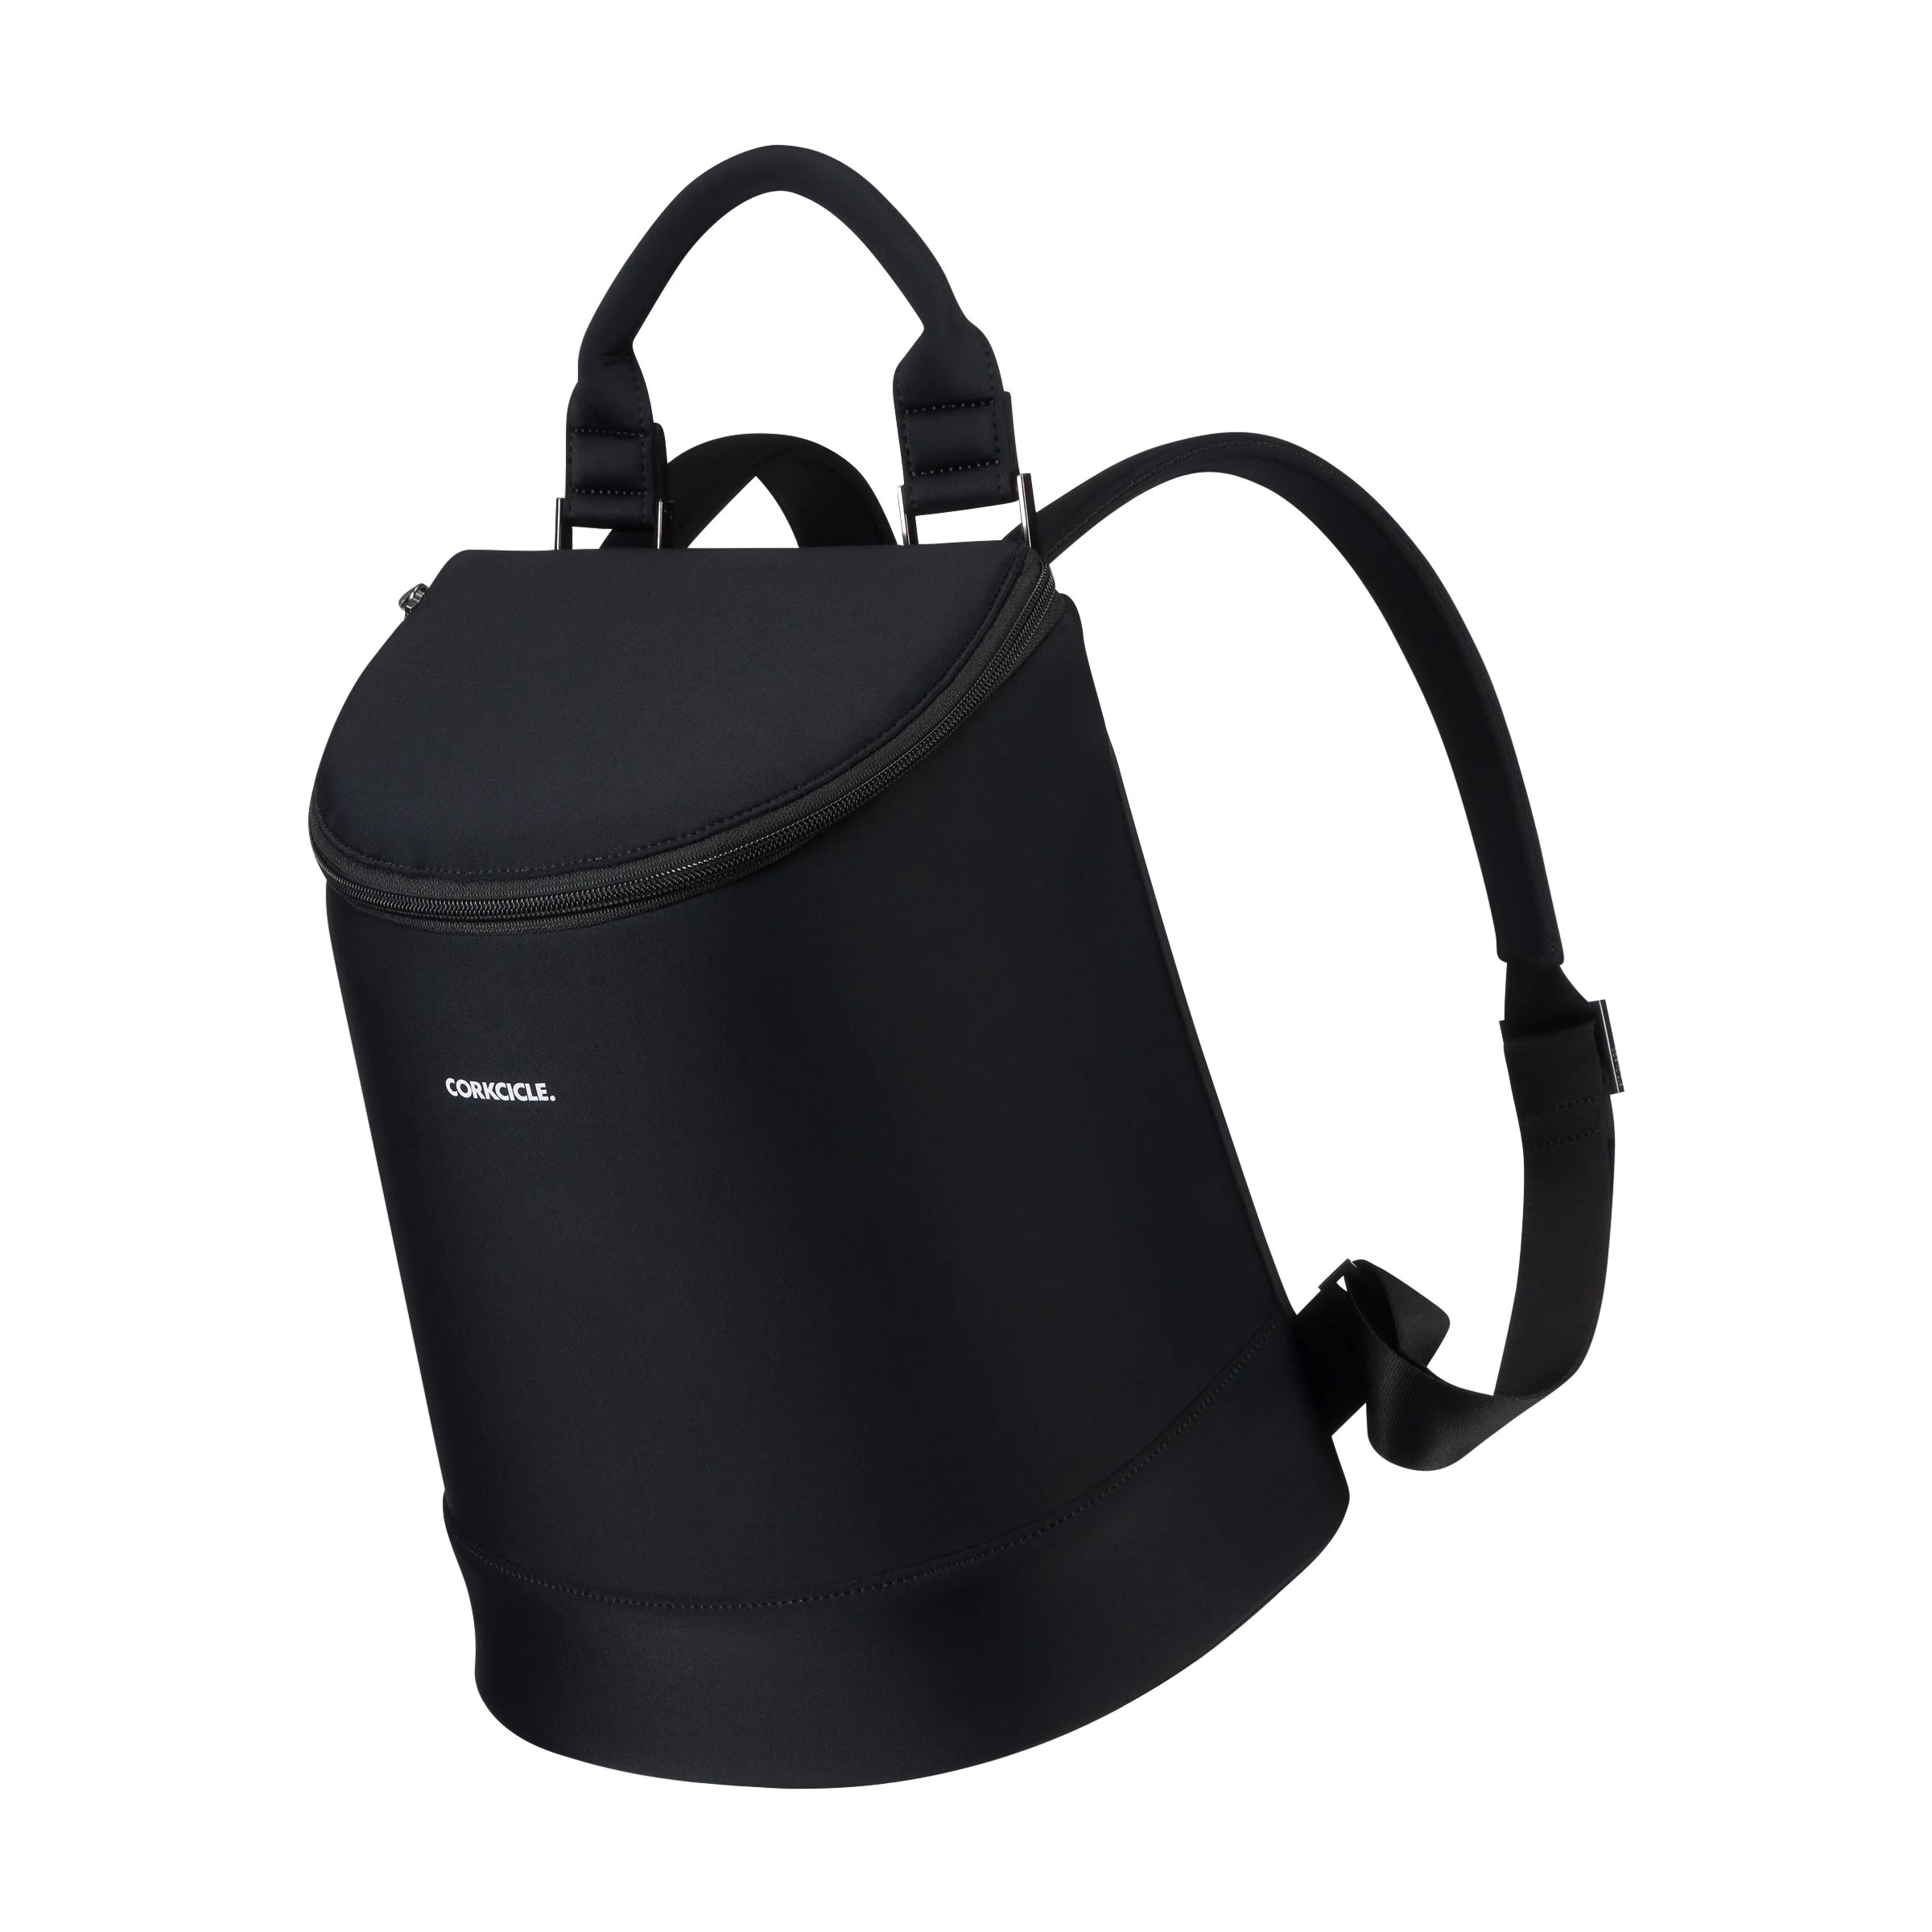 Eola Bucket Cooler Bag
              
              
                Eola Wine Cooler Bag | Corkcicle